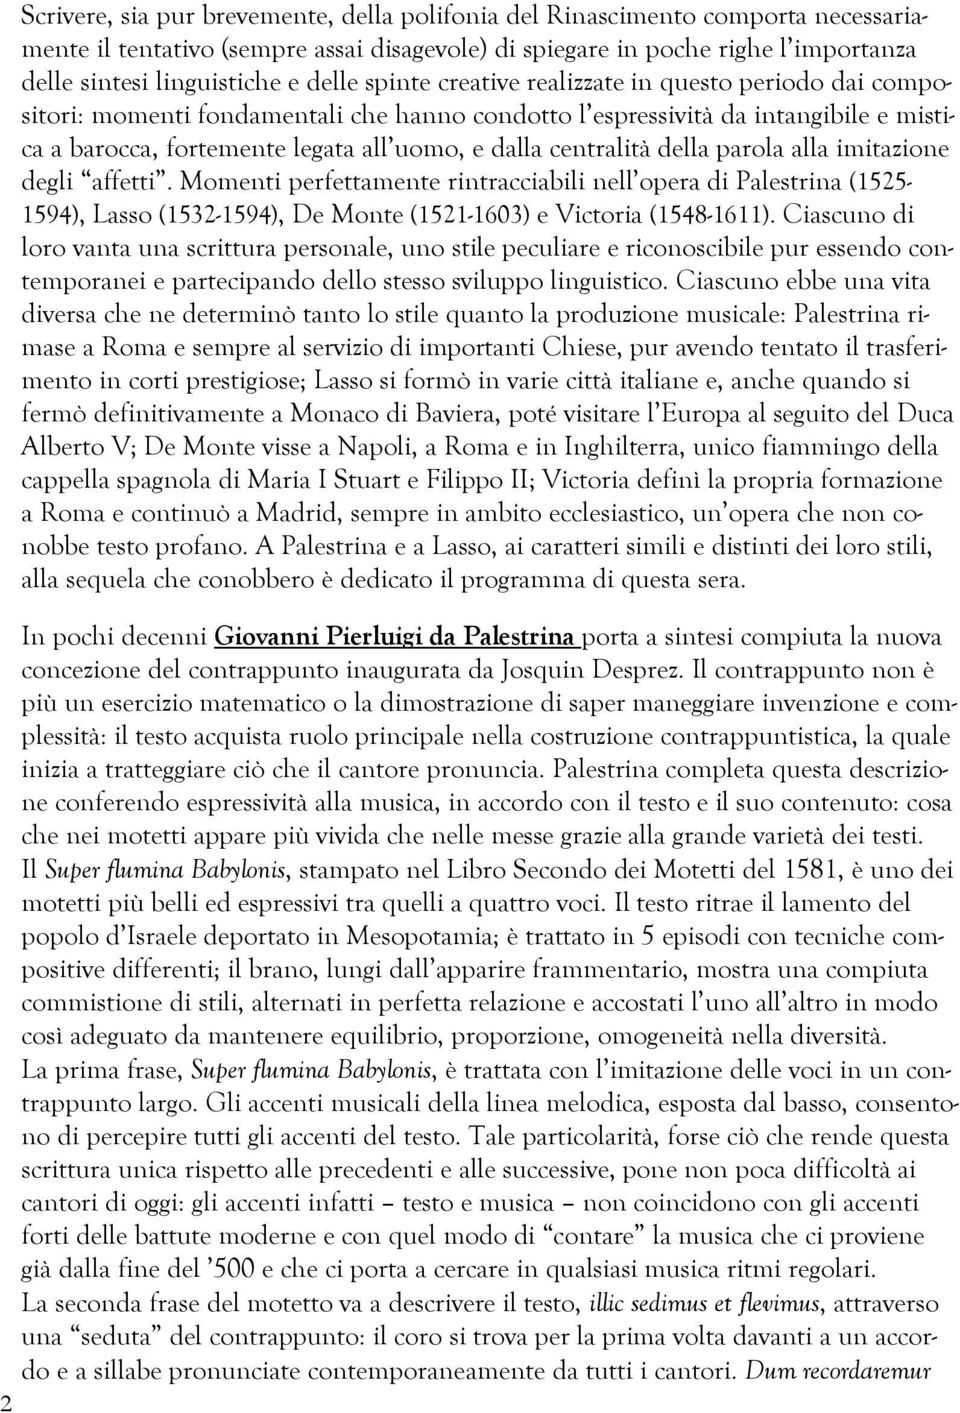 centralità della parola alla imitazione degli affetti. Momenti perfettamente rintracciabili nell opera di Palestrina (1525-1594), Lasso (1532-1594), De Monte (1521-1603) e Victoria (1548-1611).